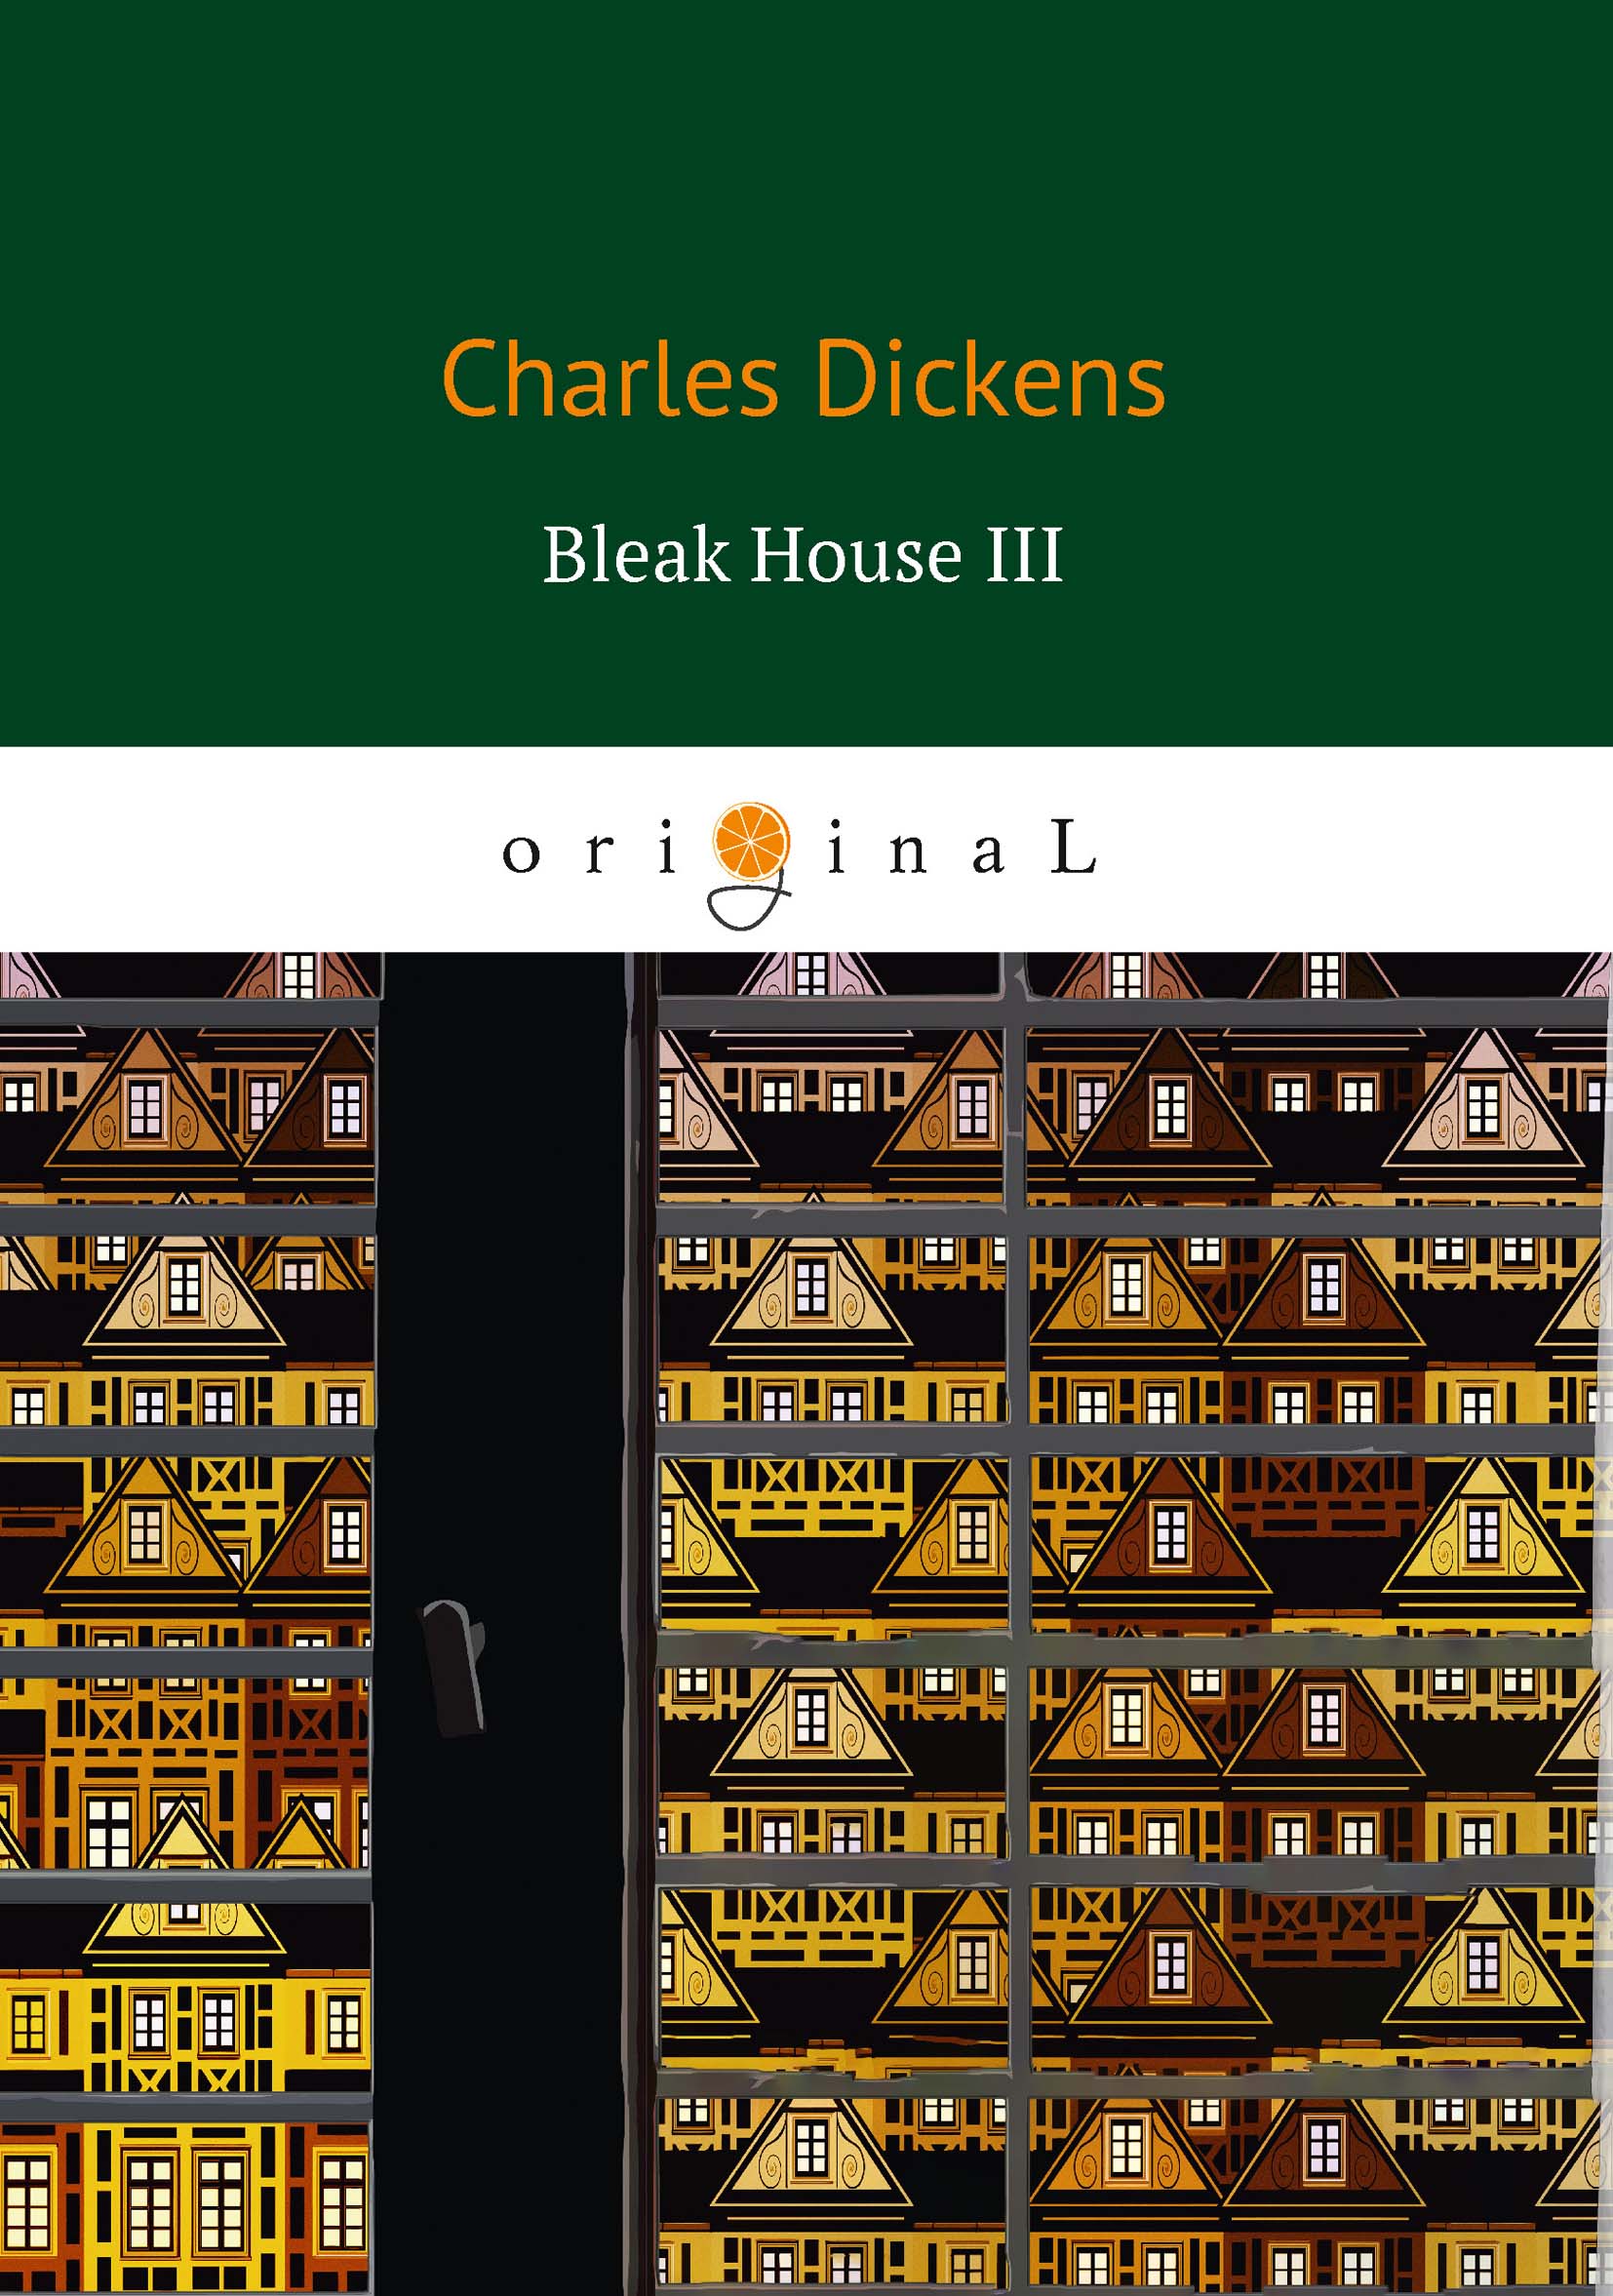 Bleak House III. Charles Dickens